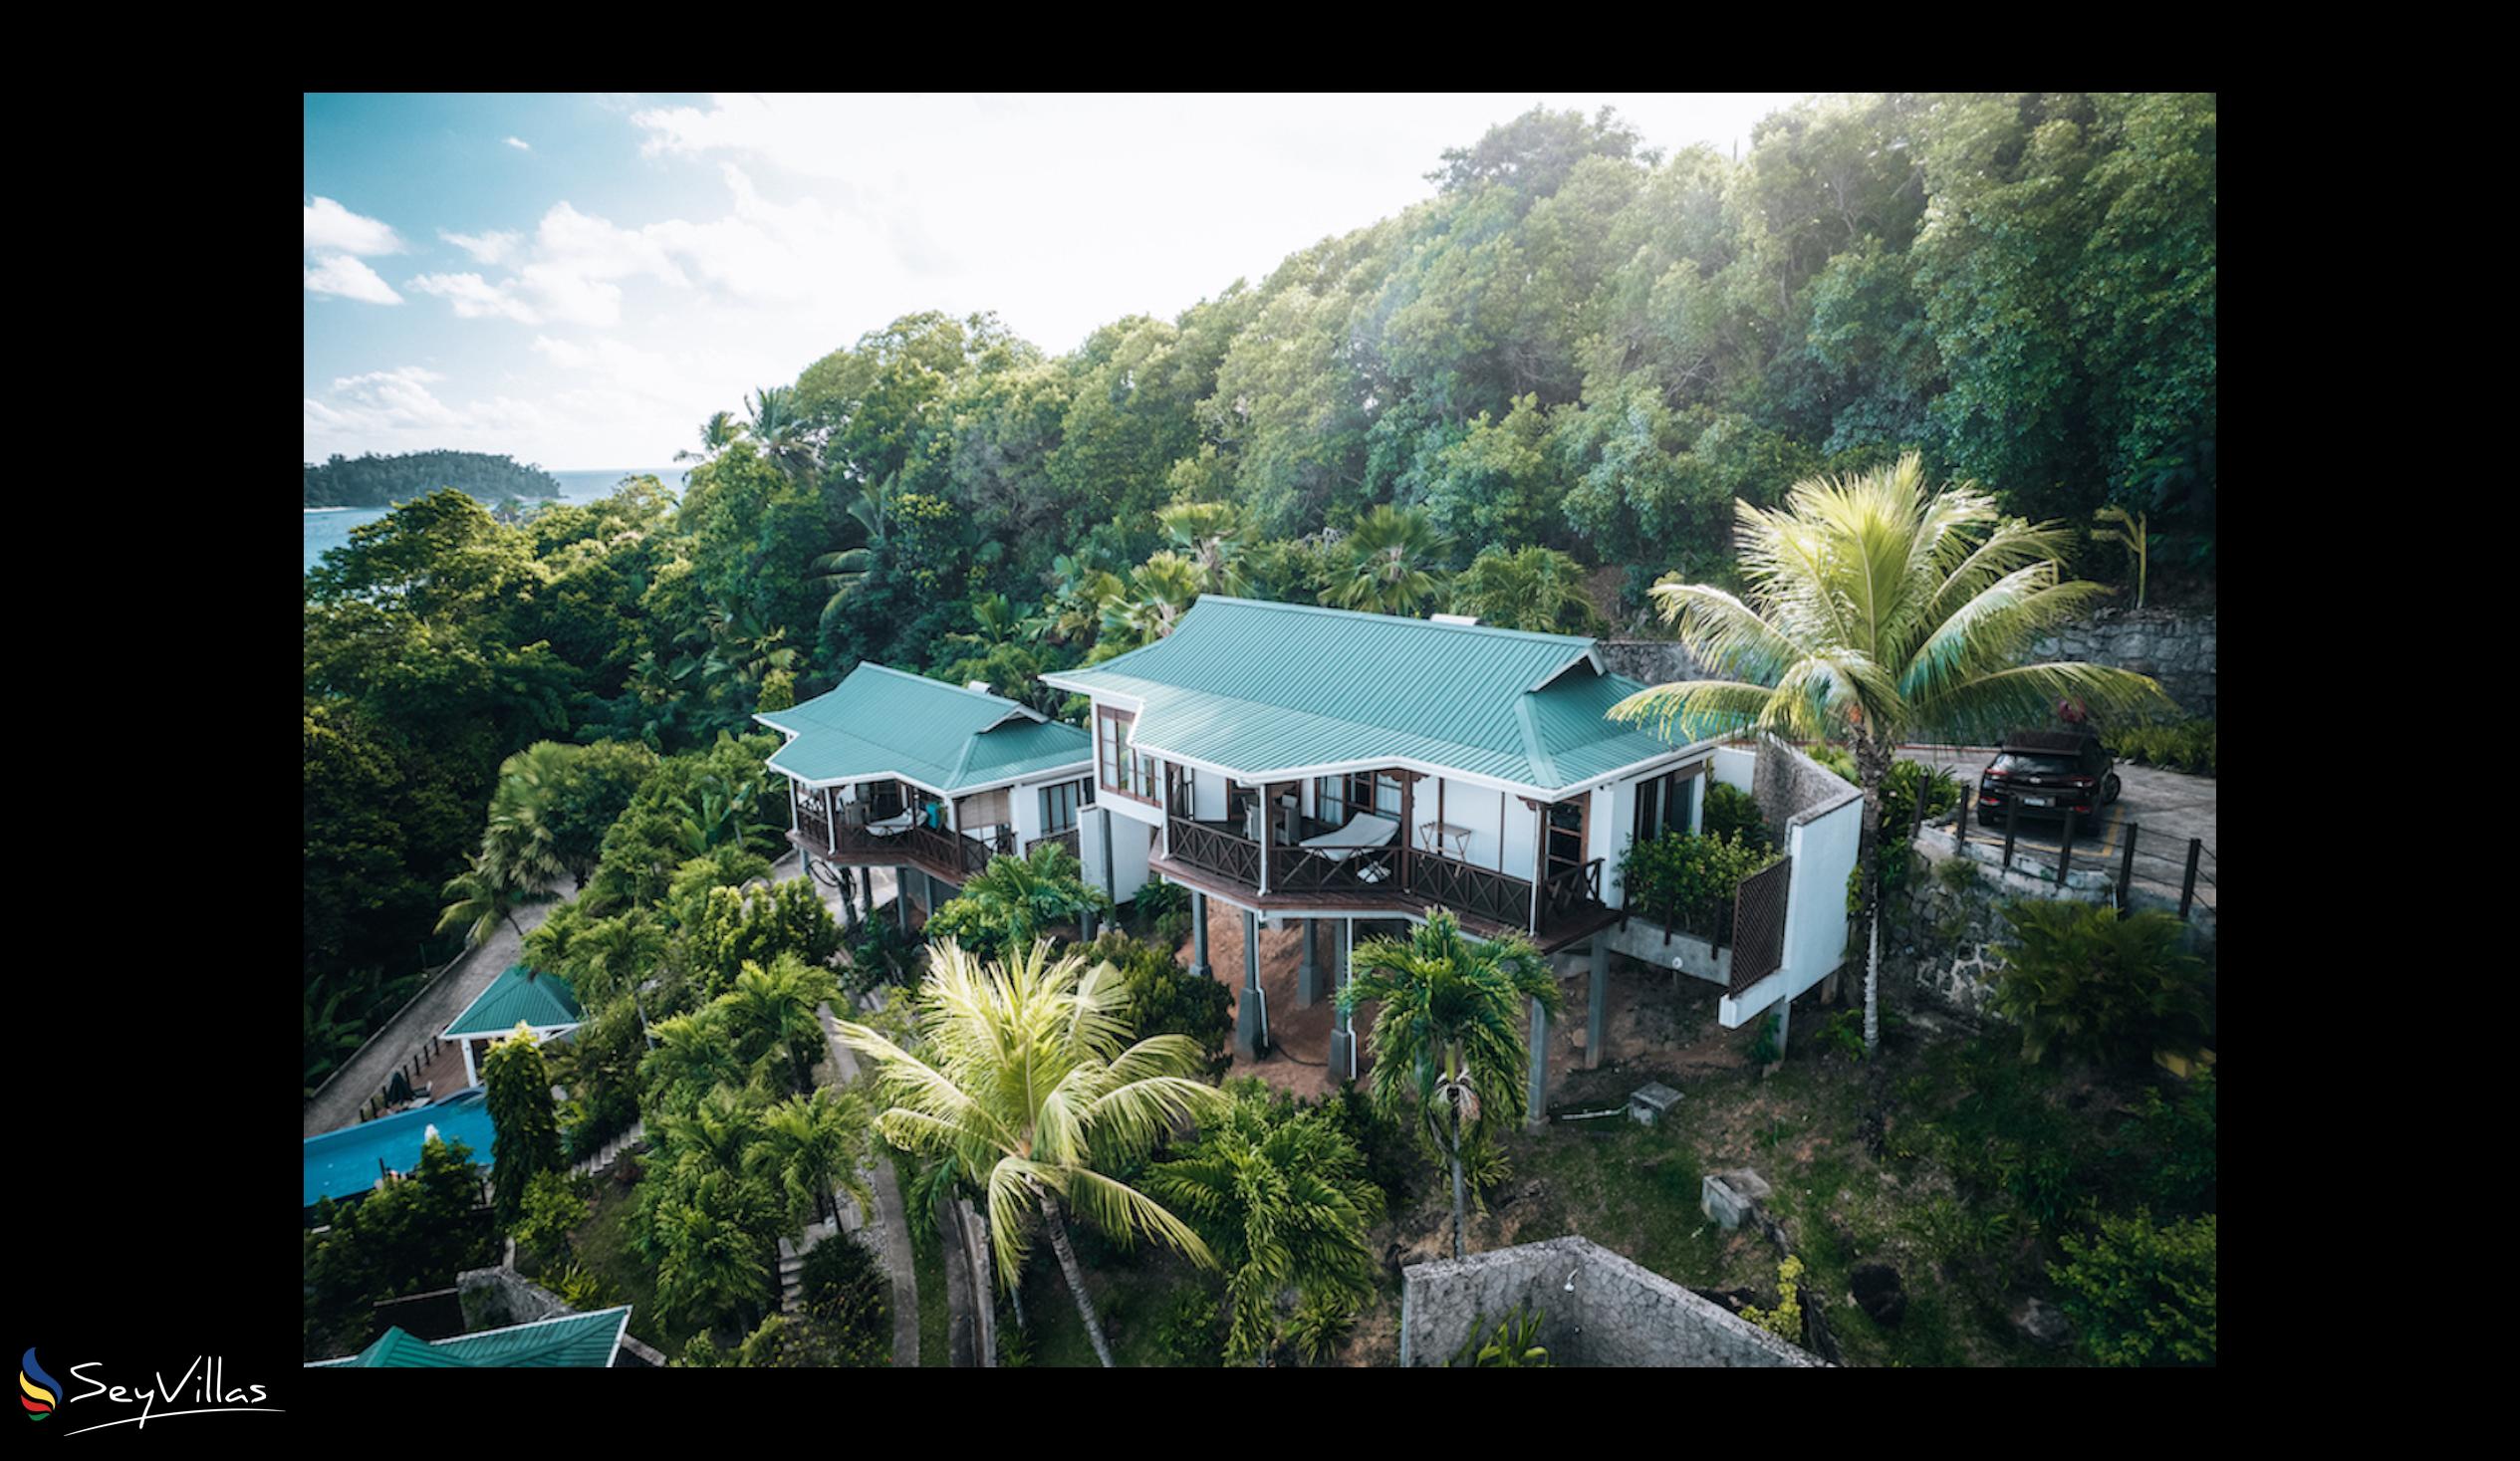 Foto 9: Villas de Jardin - Aussenbereich - Mahé (Seychellen)